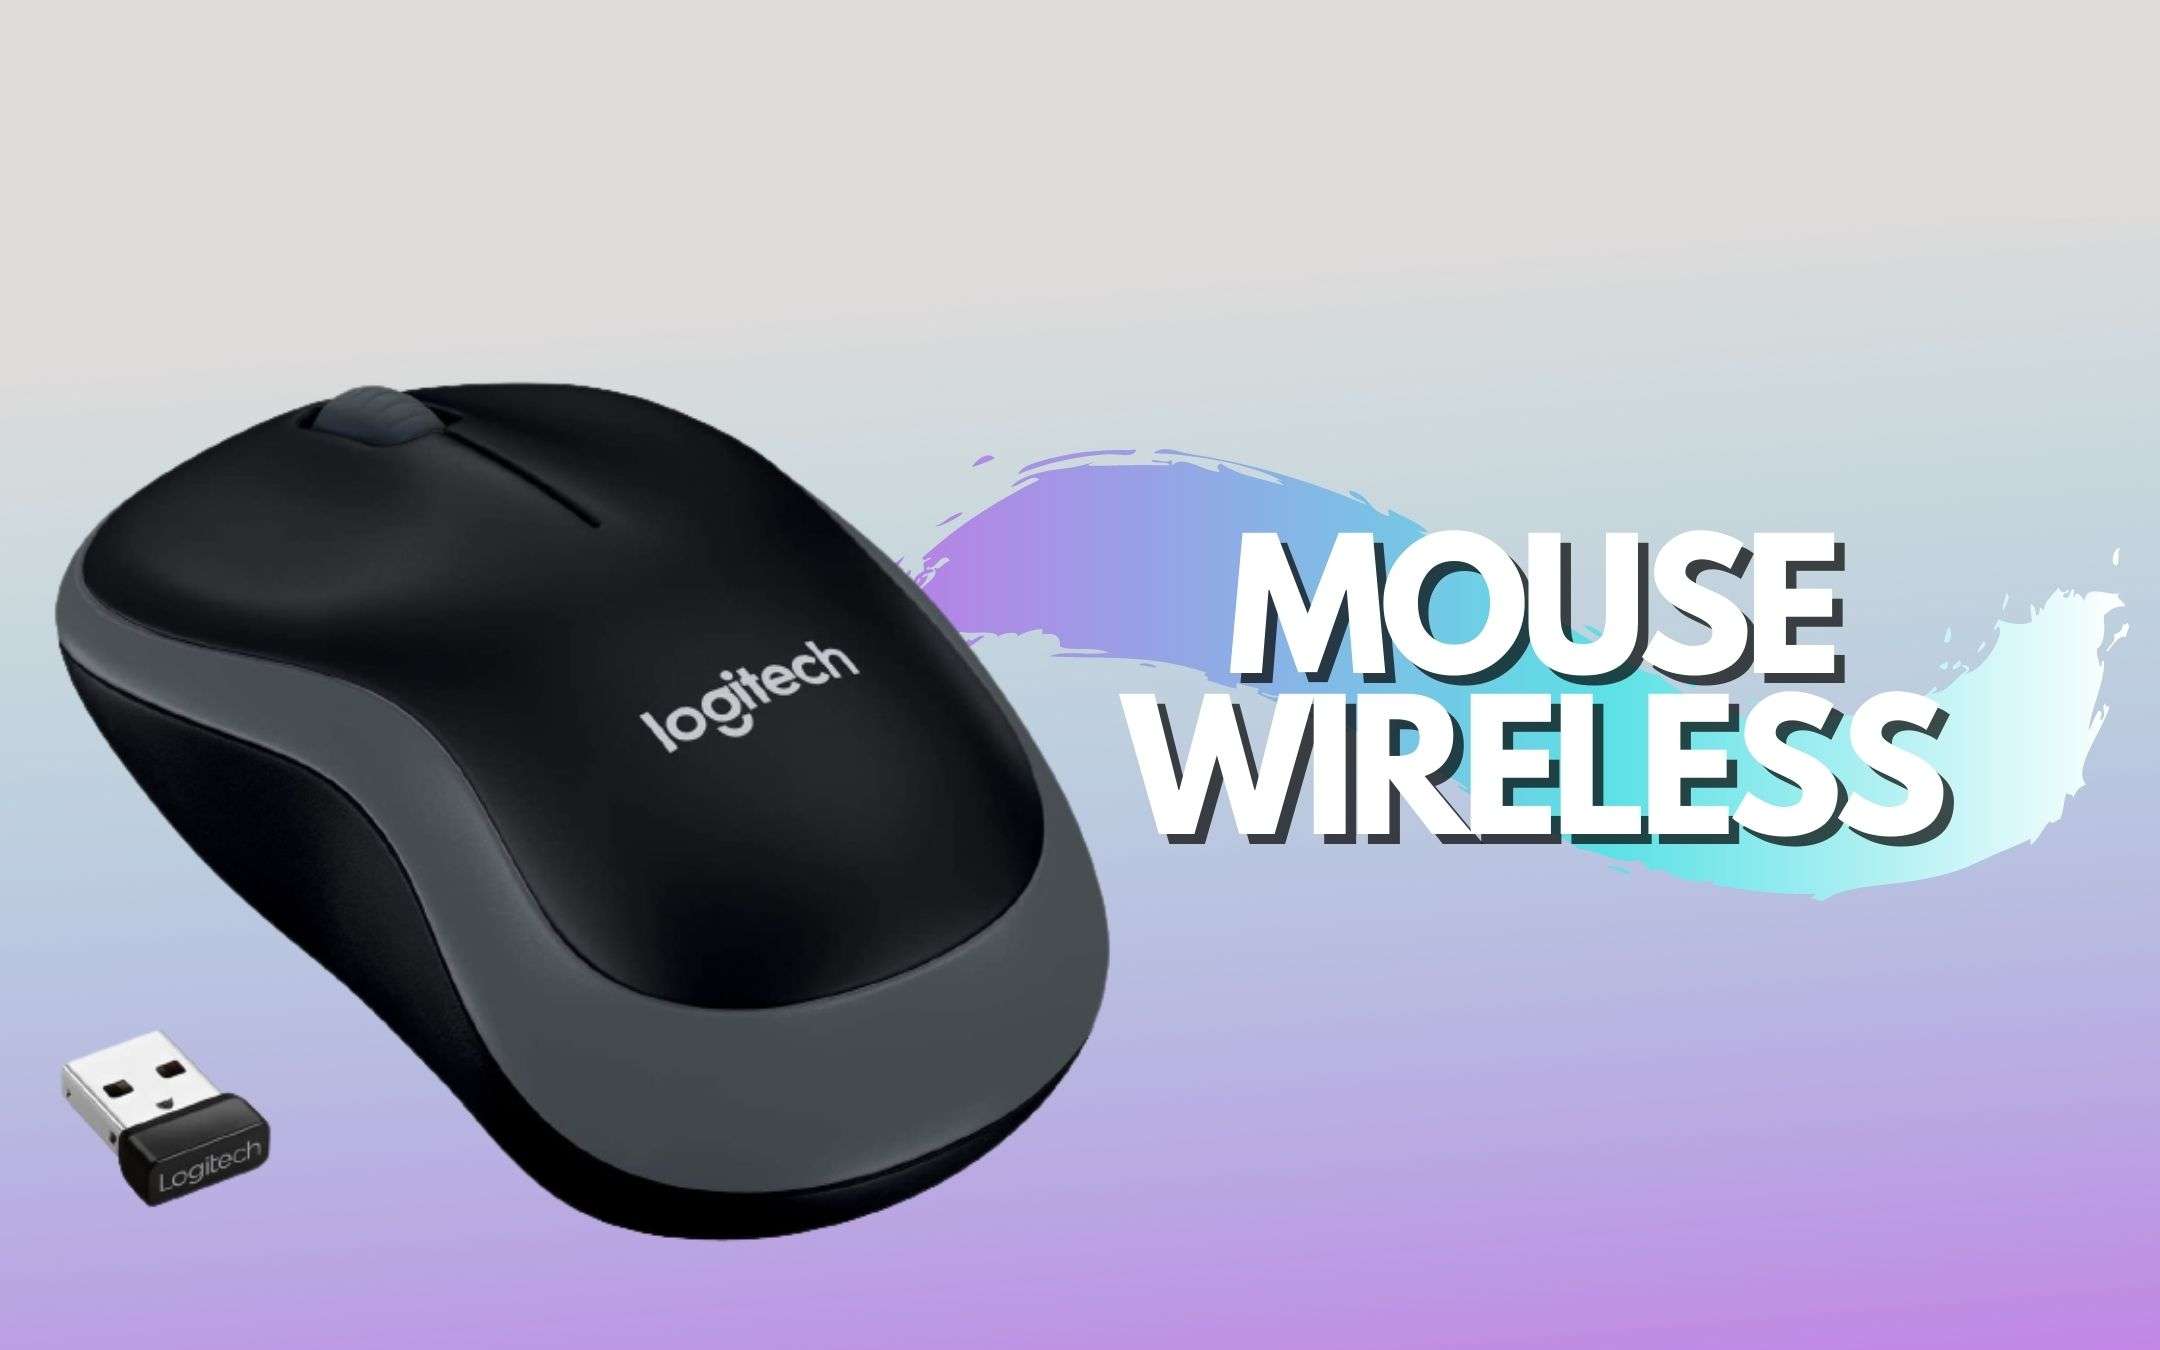 Mouse Wireless di Logitech mai stato così economico (-39%)